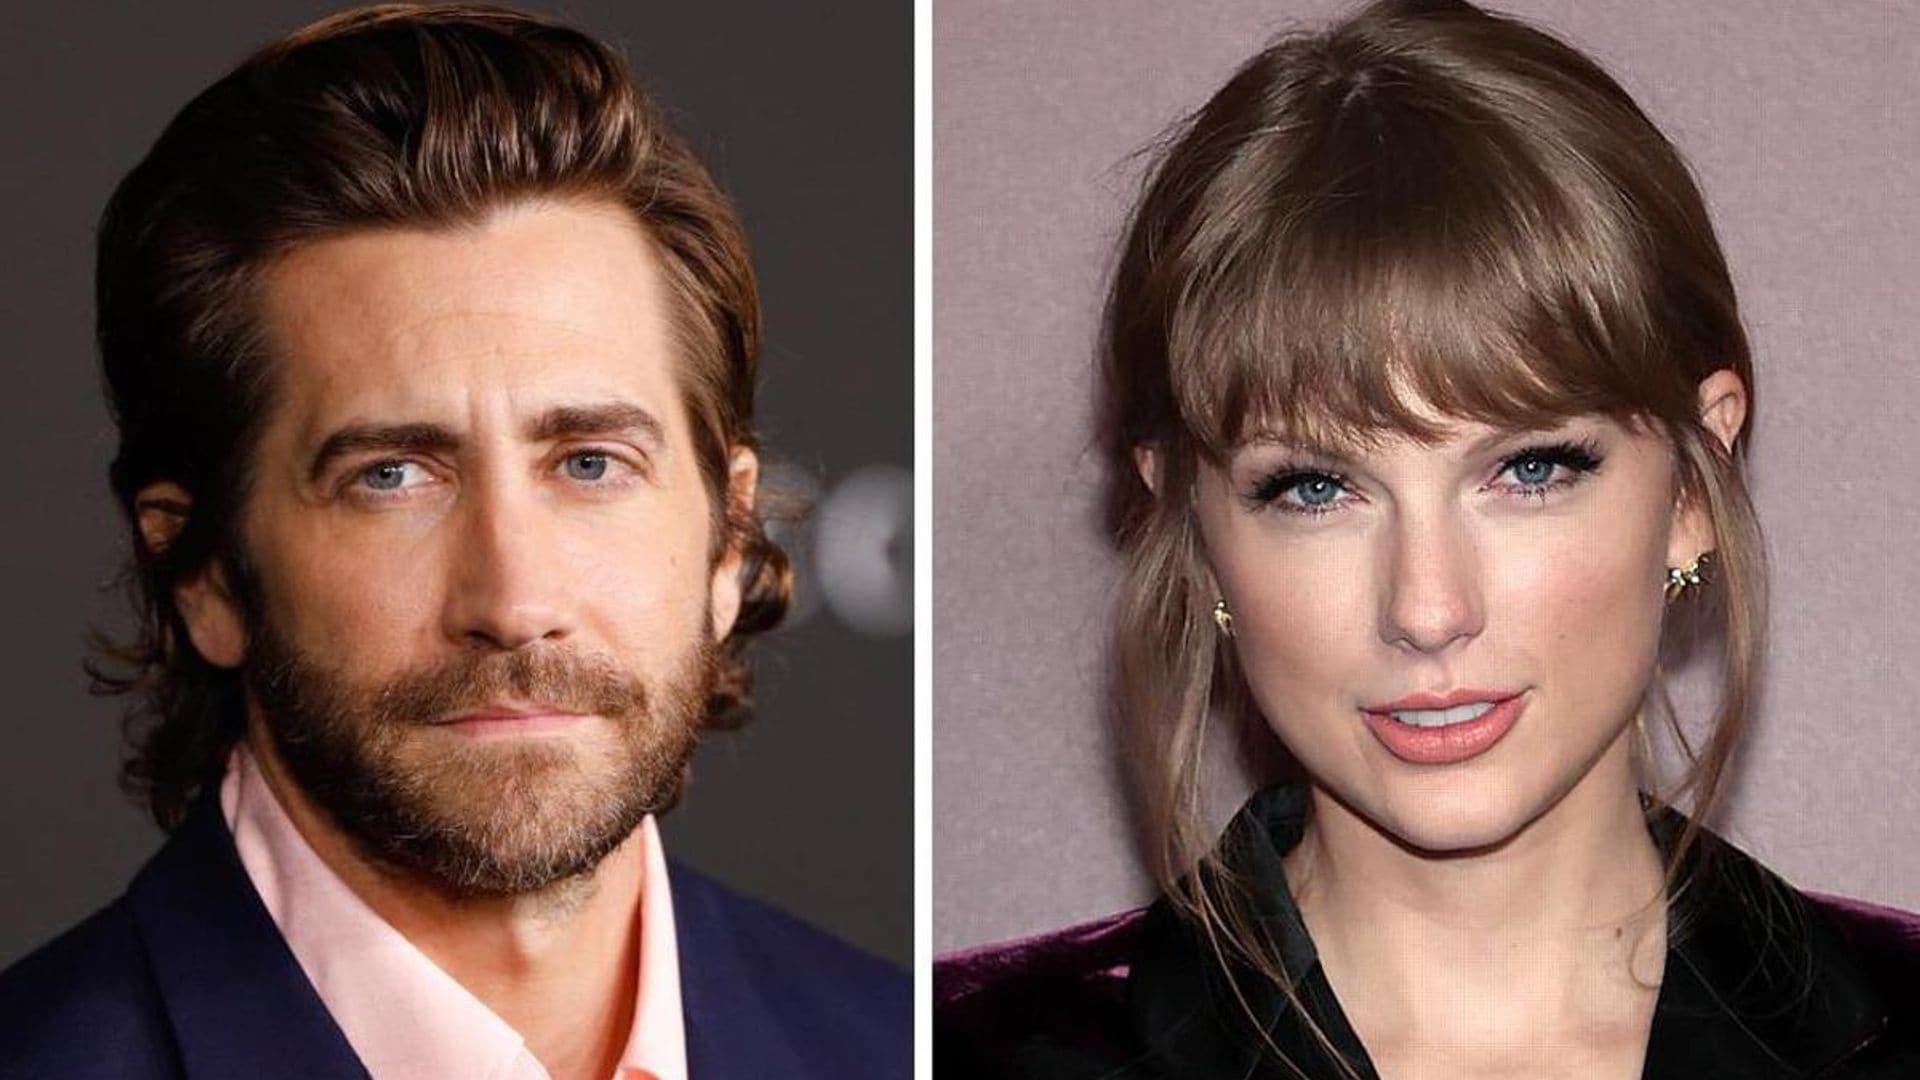 Jake Gyllenhaal talks about Taylor Swift’s “unruly” fans